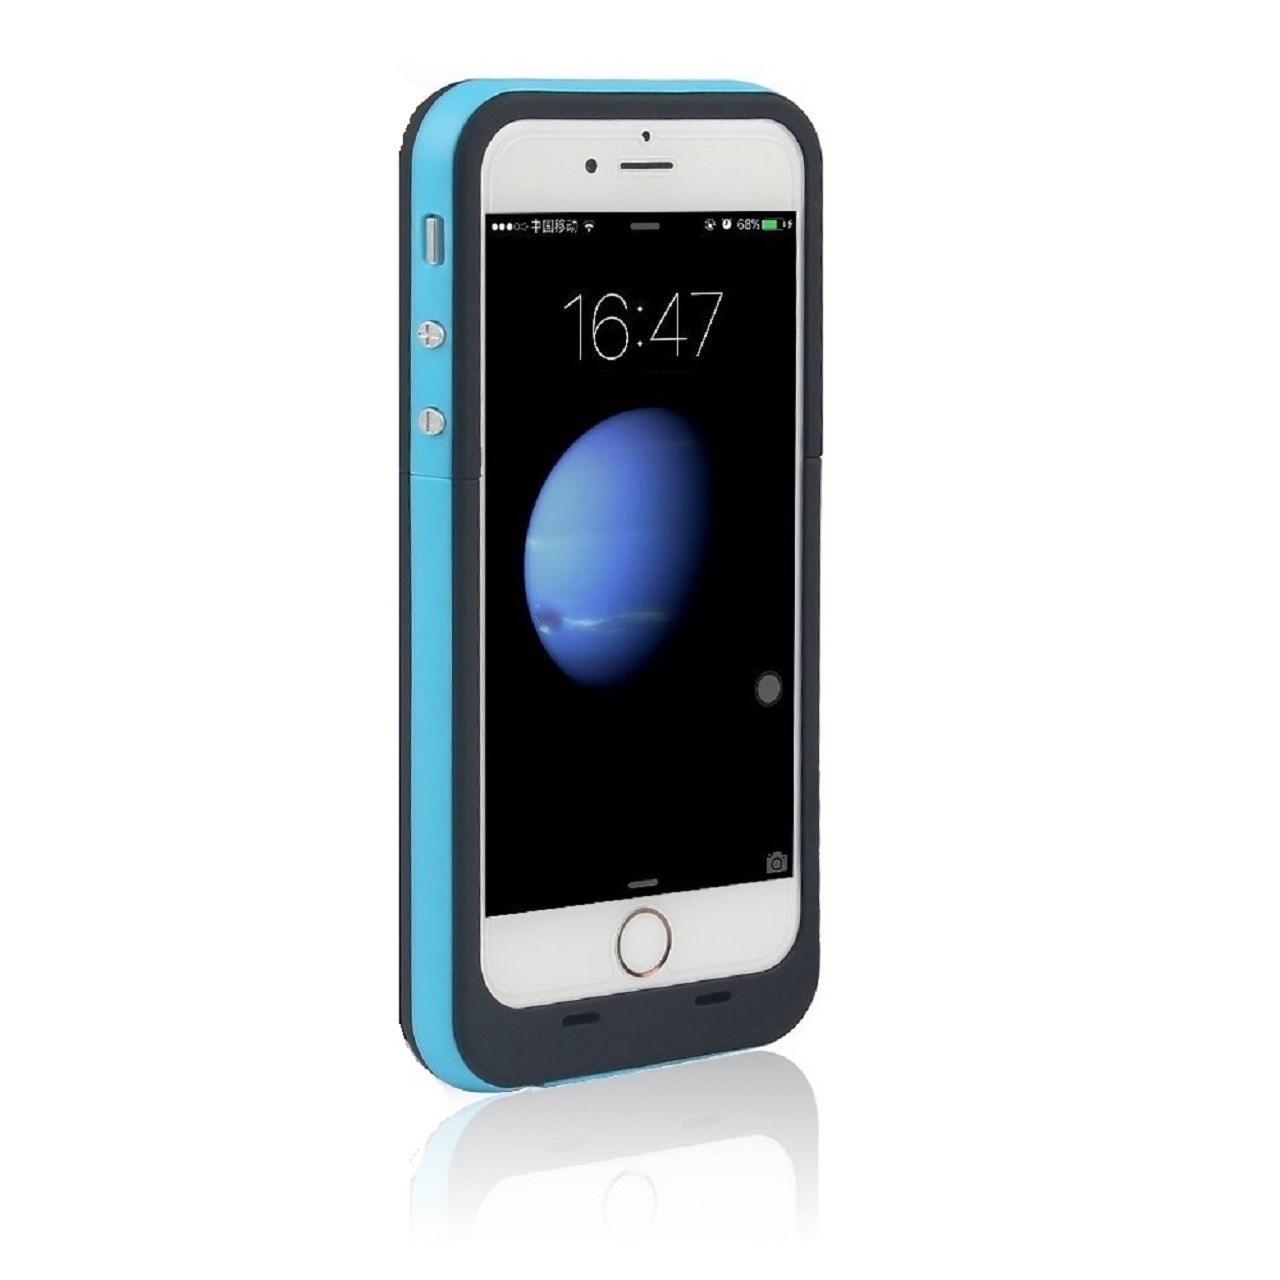 کاور شارژ بلکس مدل Series 5 ظرفیت 2500 میلی آمپر مناسب برای گوشی های iPhone 5 5s SE